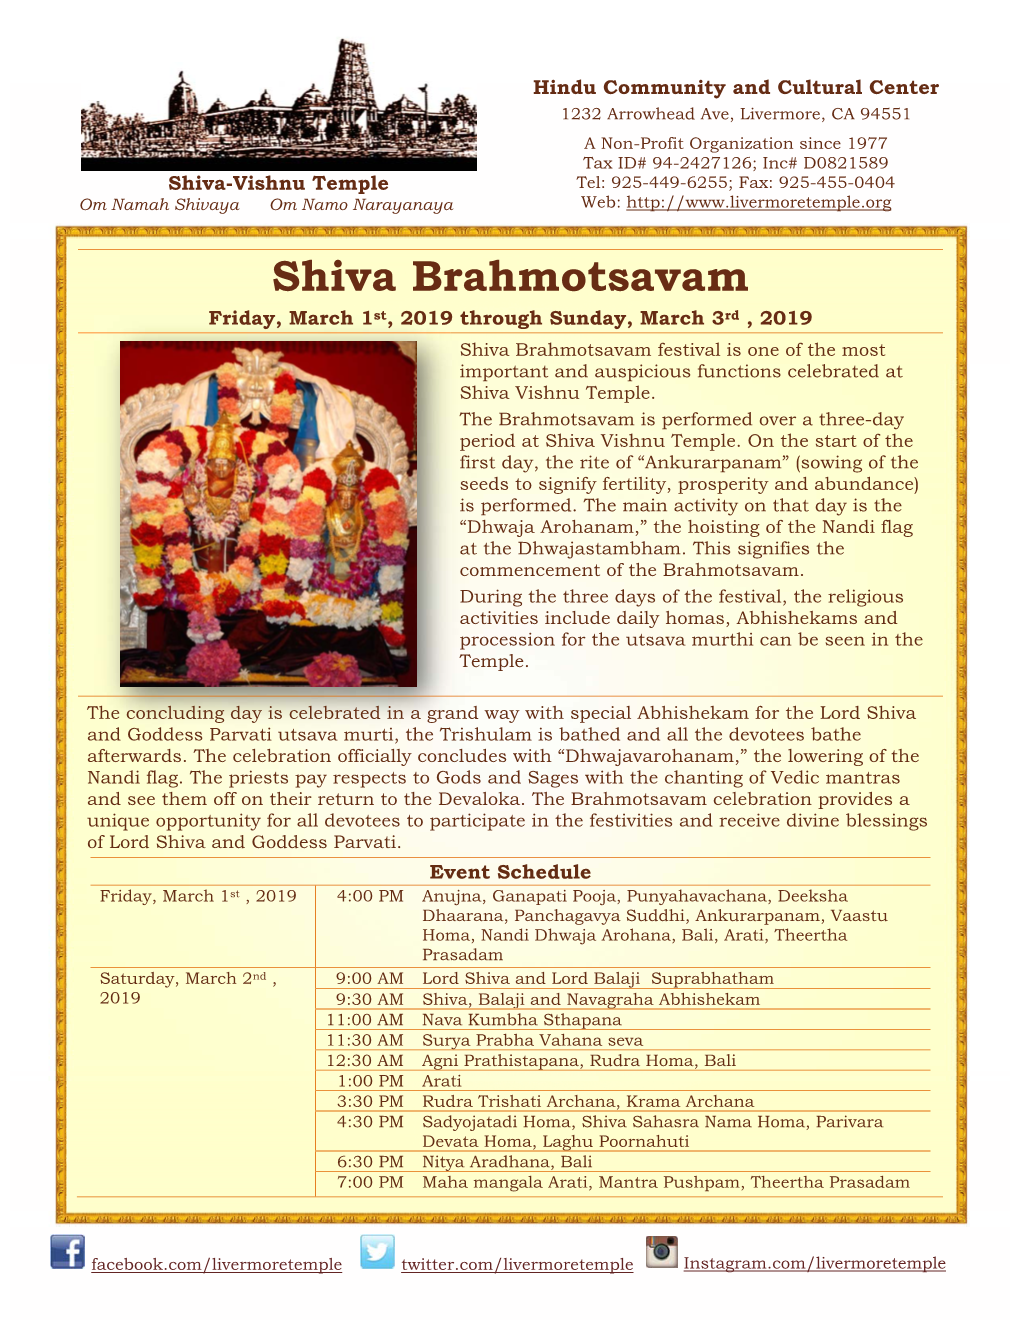 Shiva Brahmotsavam